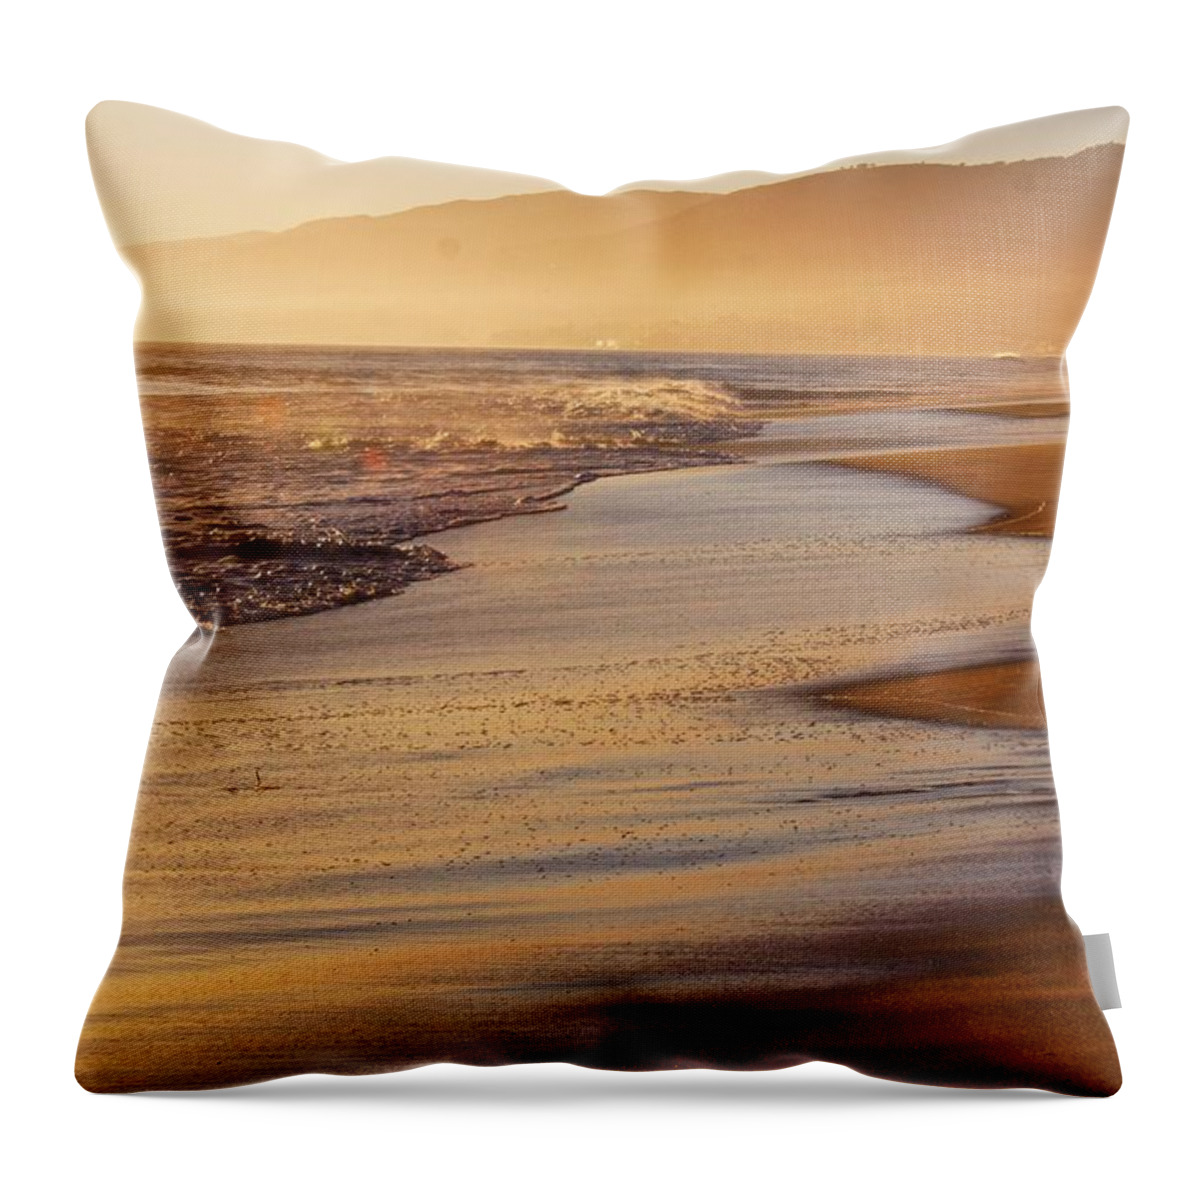 Beach Throw Pillow featuring the photograph Sunset on a Beach by Alexander Fedin